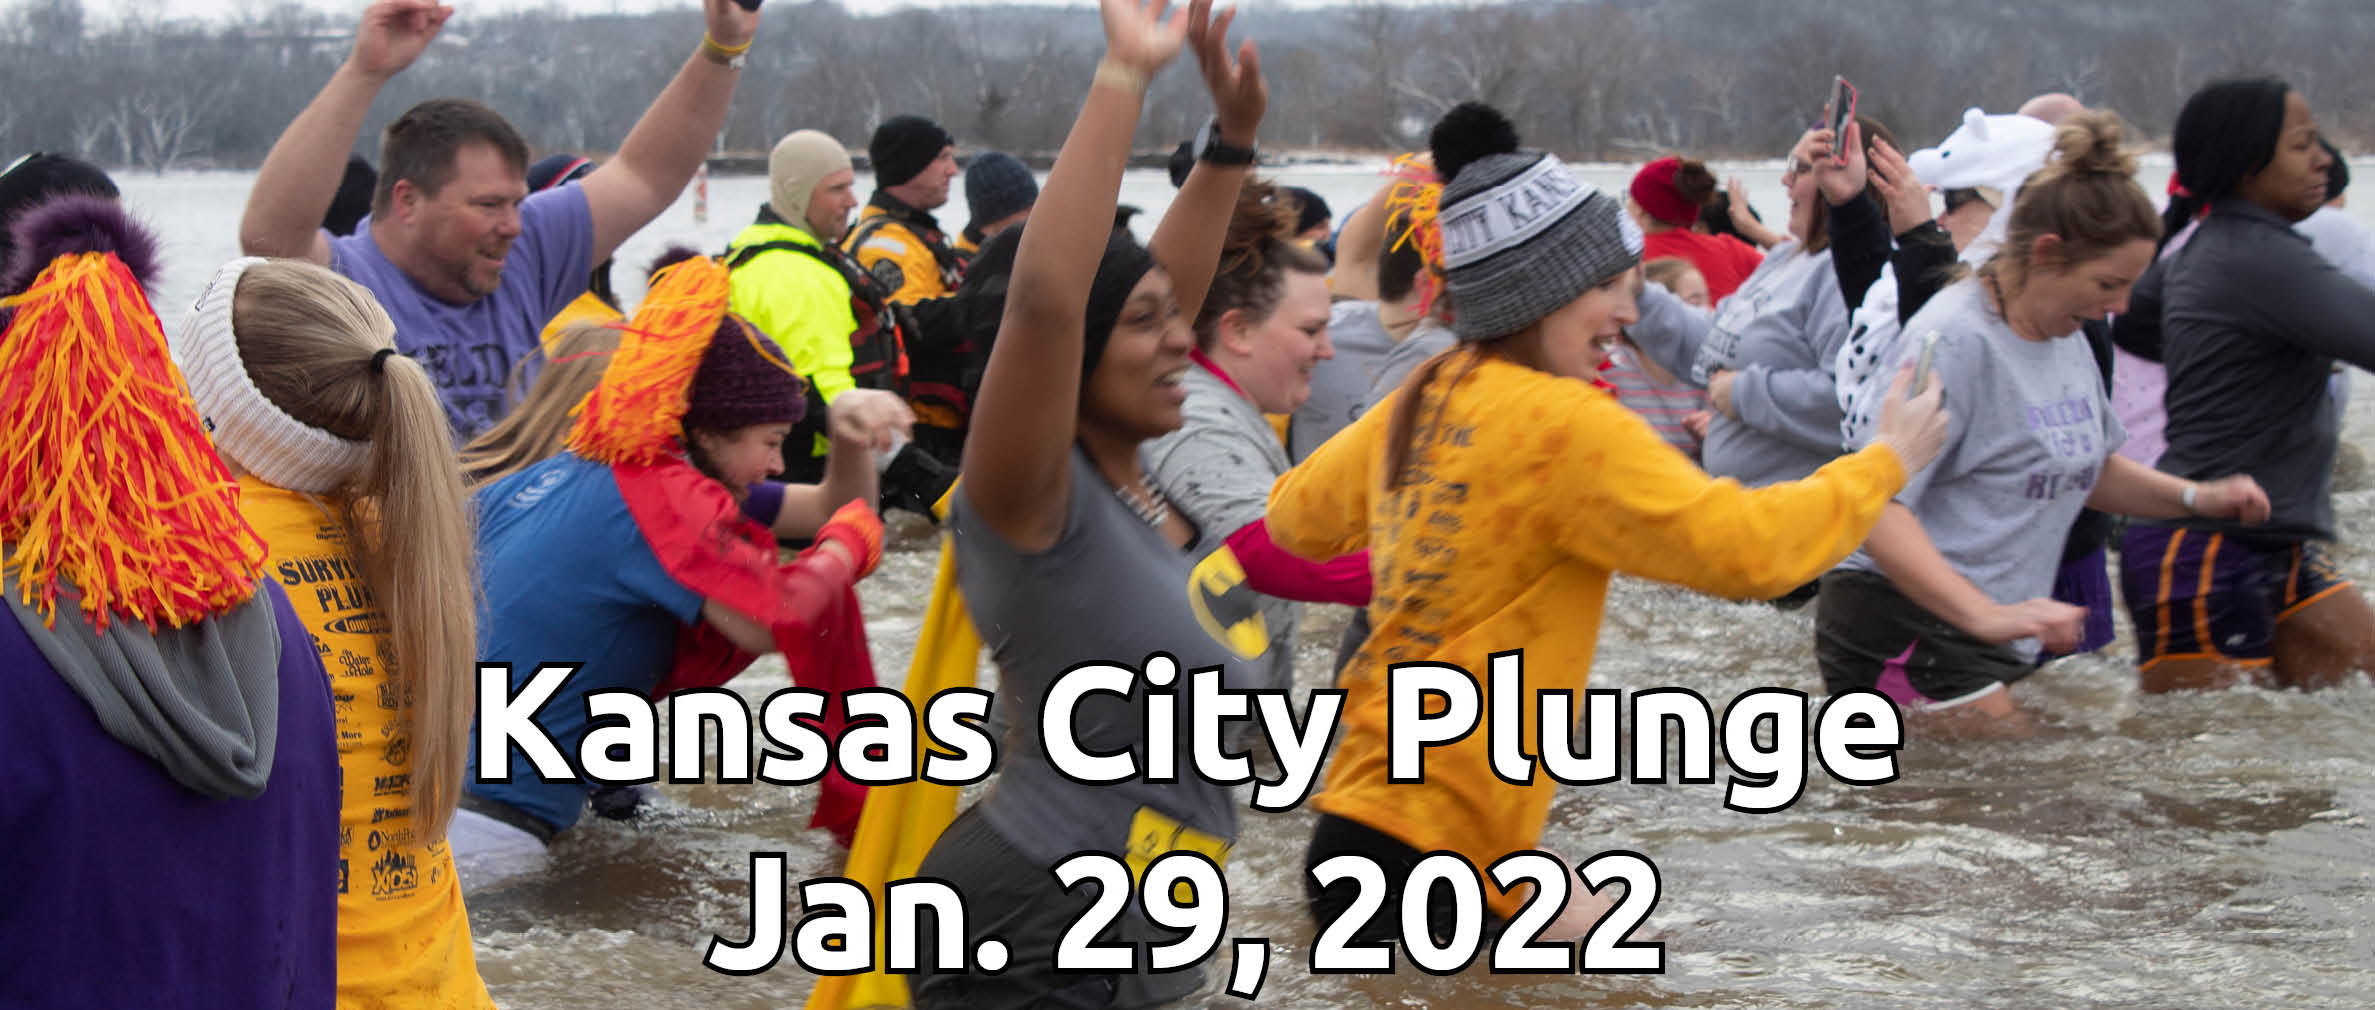 2022 Kansas City Plunge logo banner